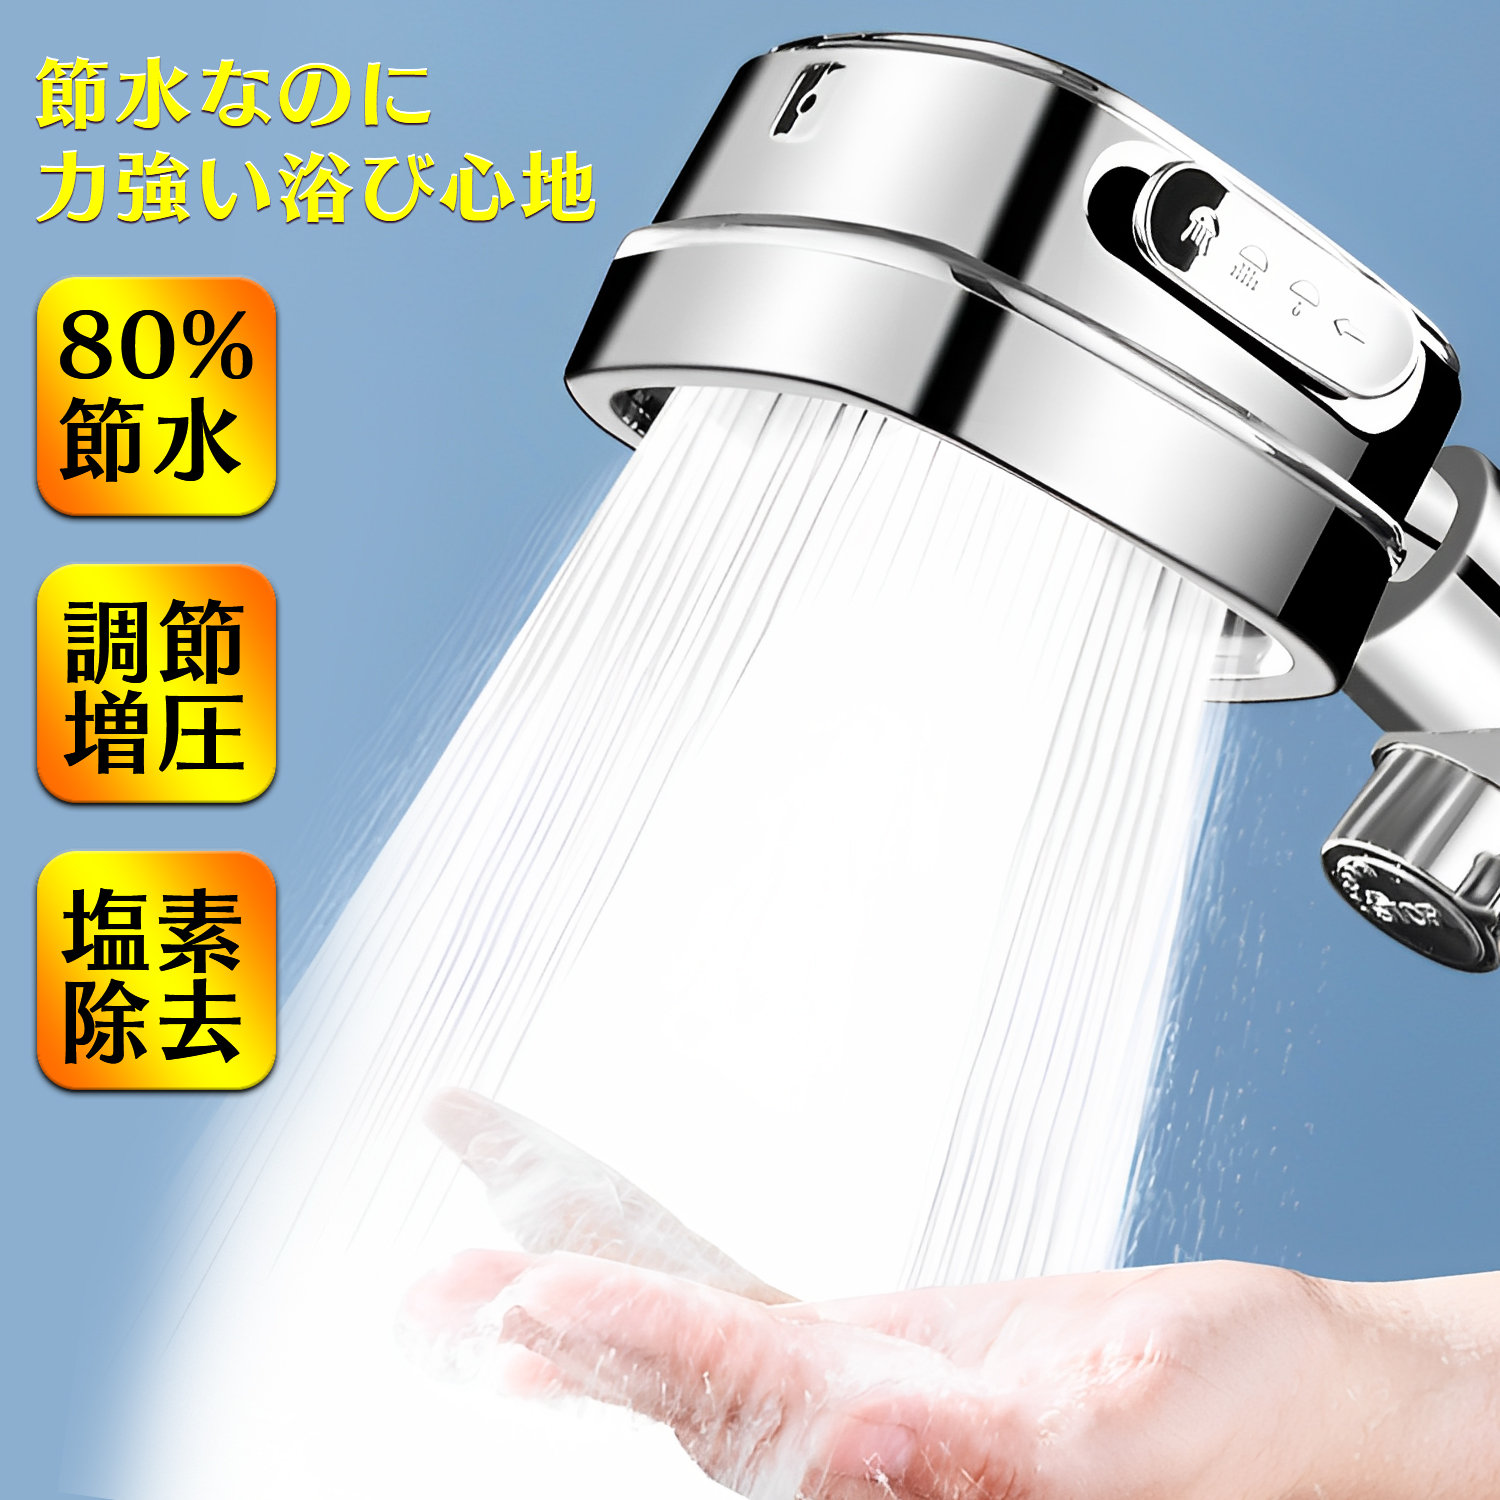 シャワーヘッド 節水 塩素除去 増圧調節 水流調整 高水圧 マイクロ 